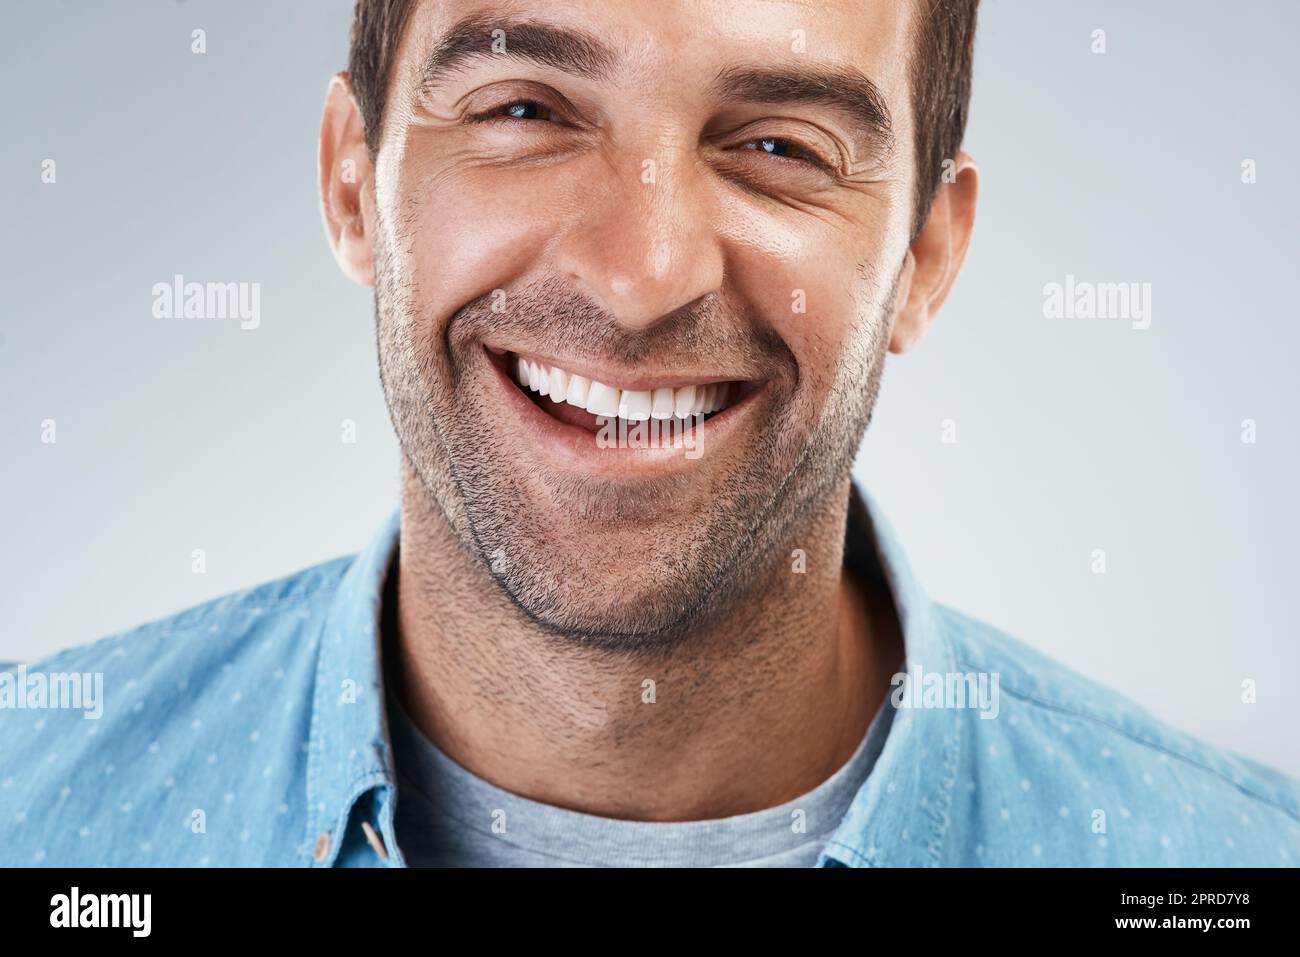 Nun, das ist ein gutes Lächeln. Porträt eines fröhlichen jungen Mannes, der hell lächelt und vor einem grauen Hintergrund steht. Stockfoto